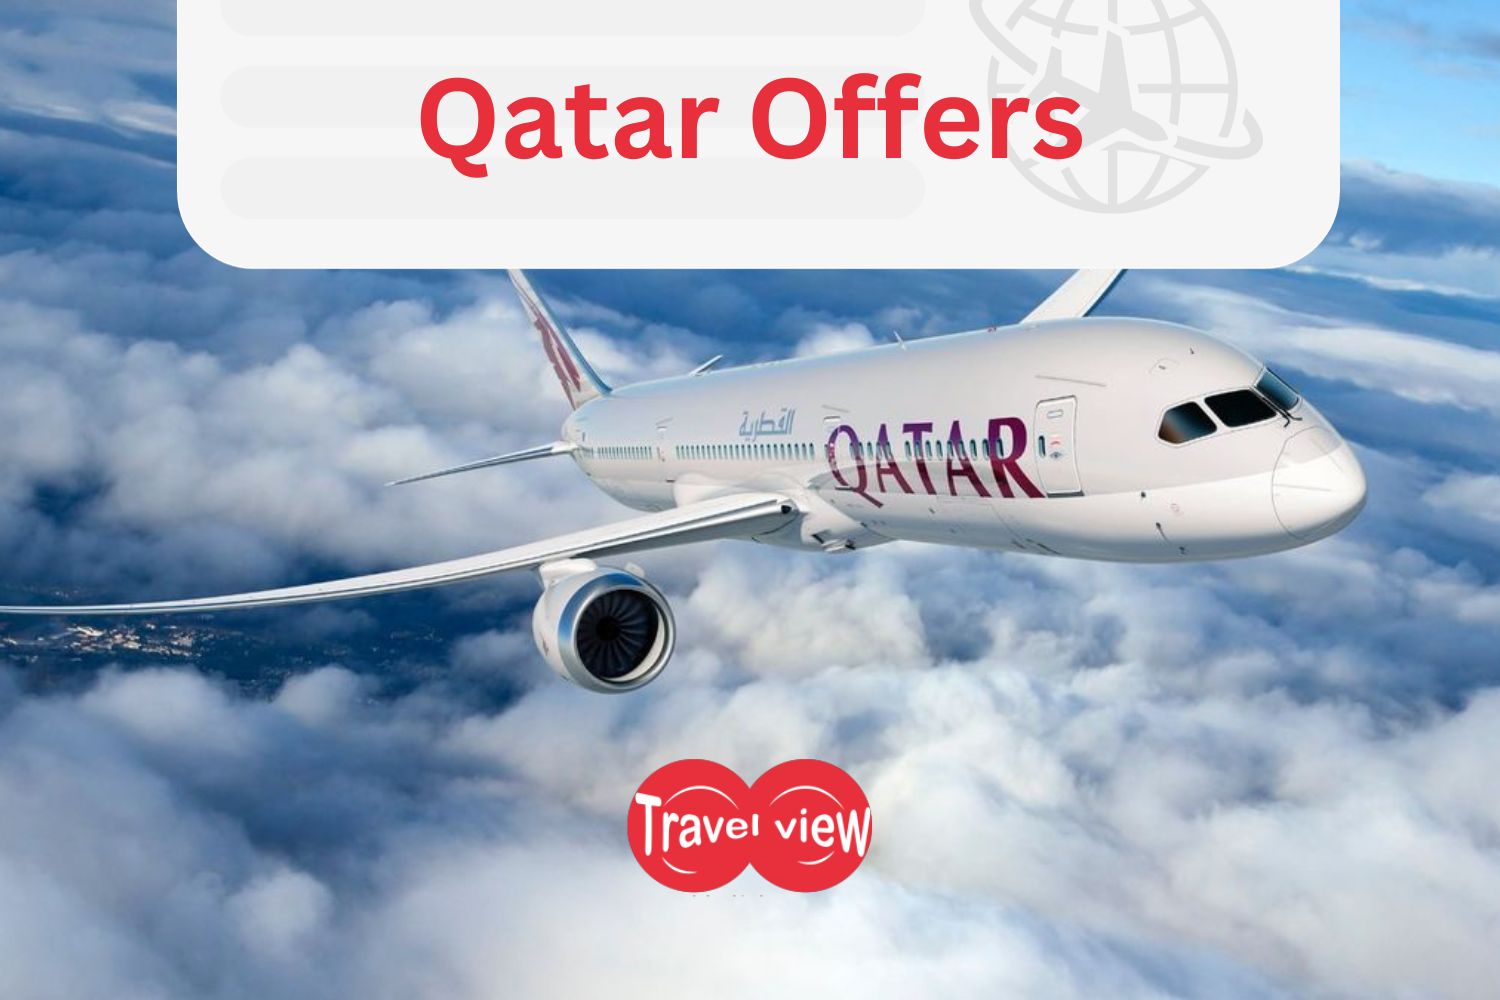 Travel View Flight Offers Qatar Airways